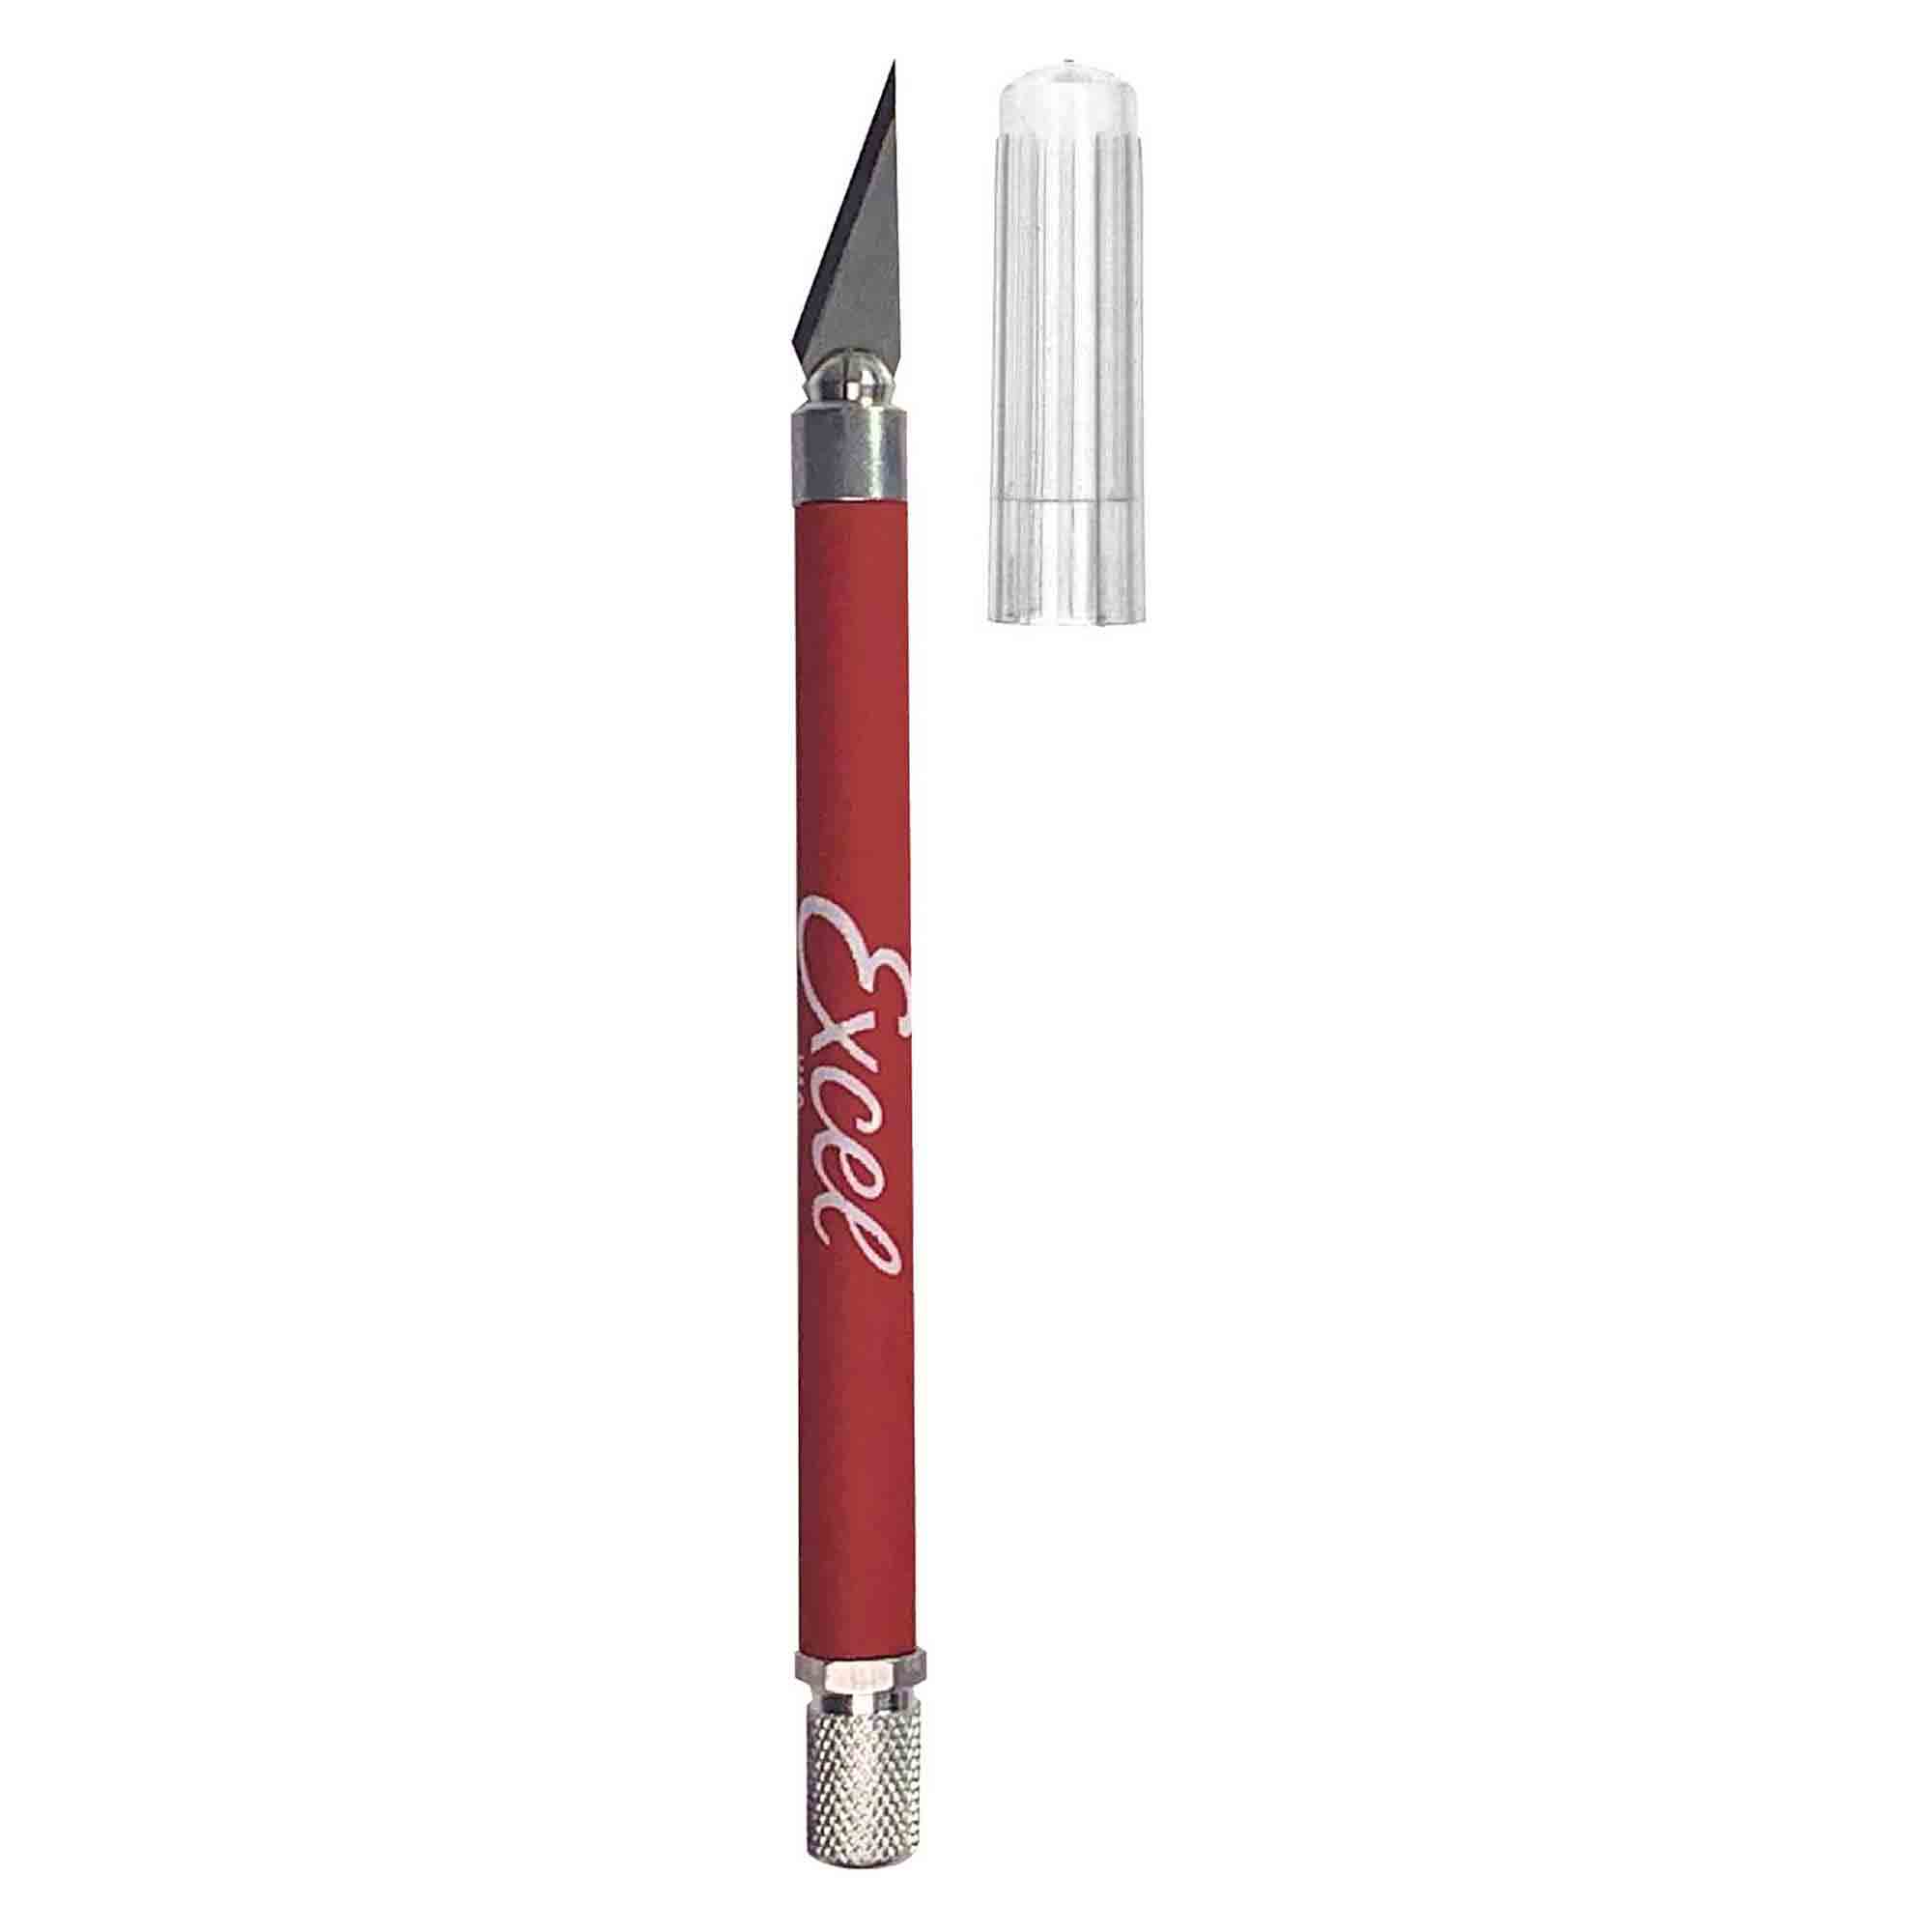 Excel K18 RED Soft Grip Knife USA - 16024